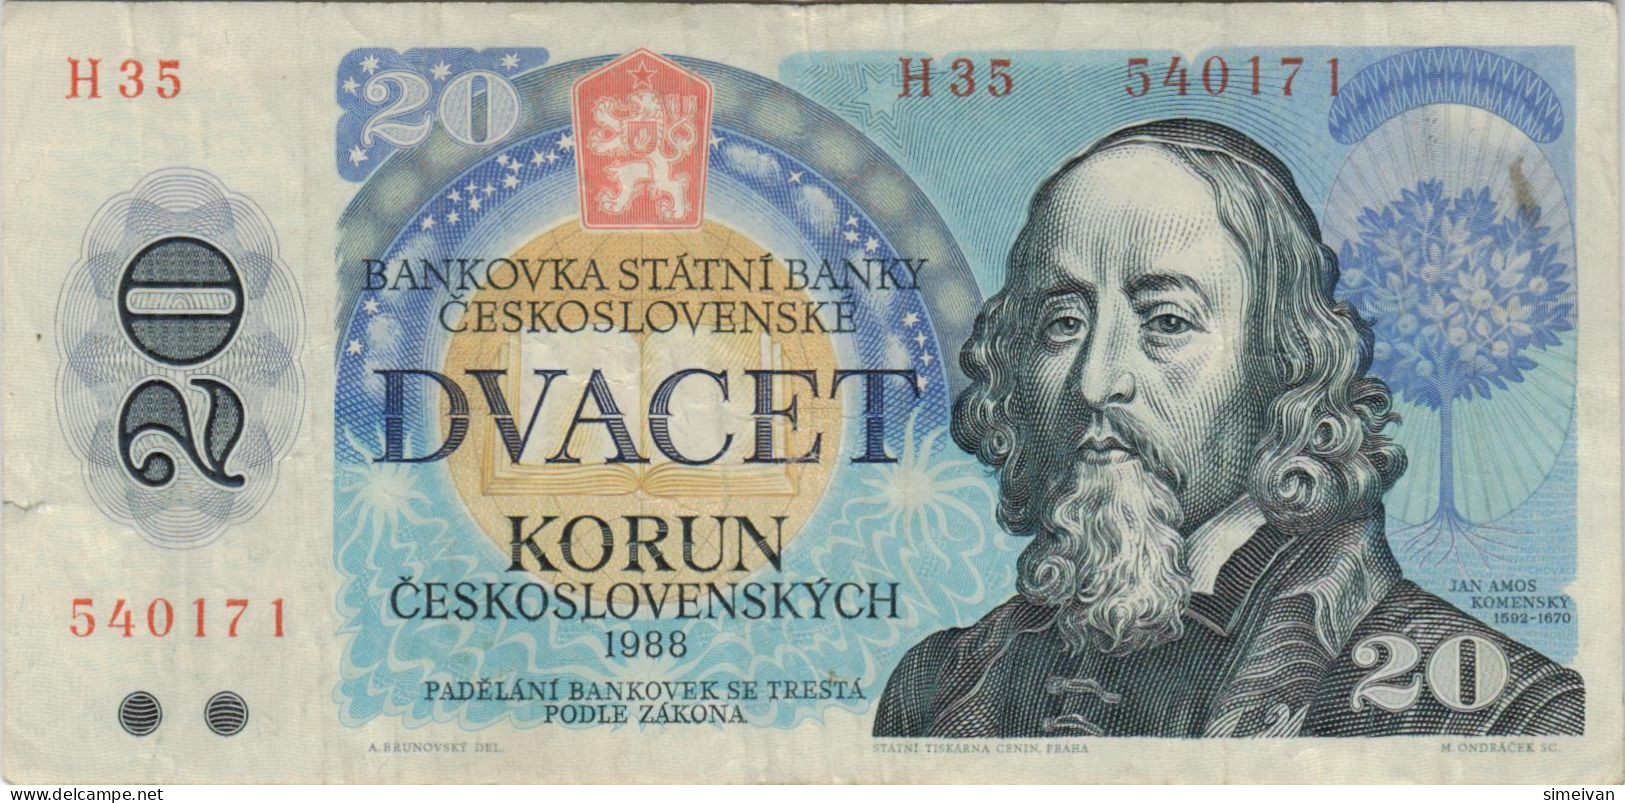 Czechoslovakia 20 Korun 1988 P-95b Banknote Europe Currency Tchécoslovaquie Tschechoslowakei #5257 - Czechoslovakia